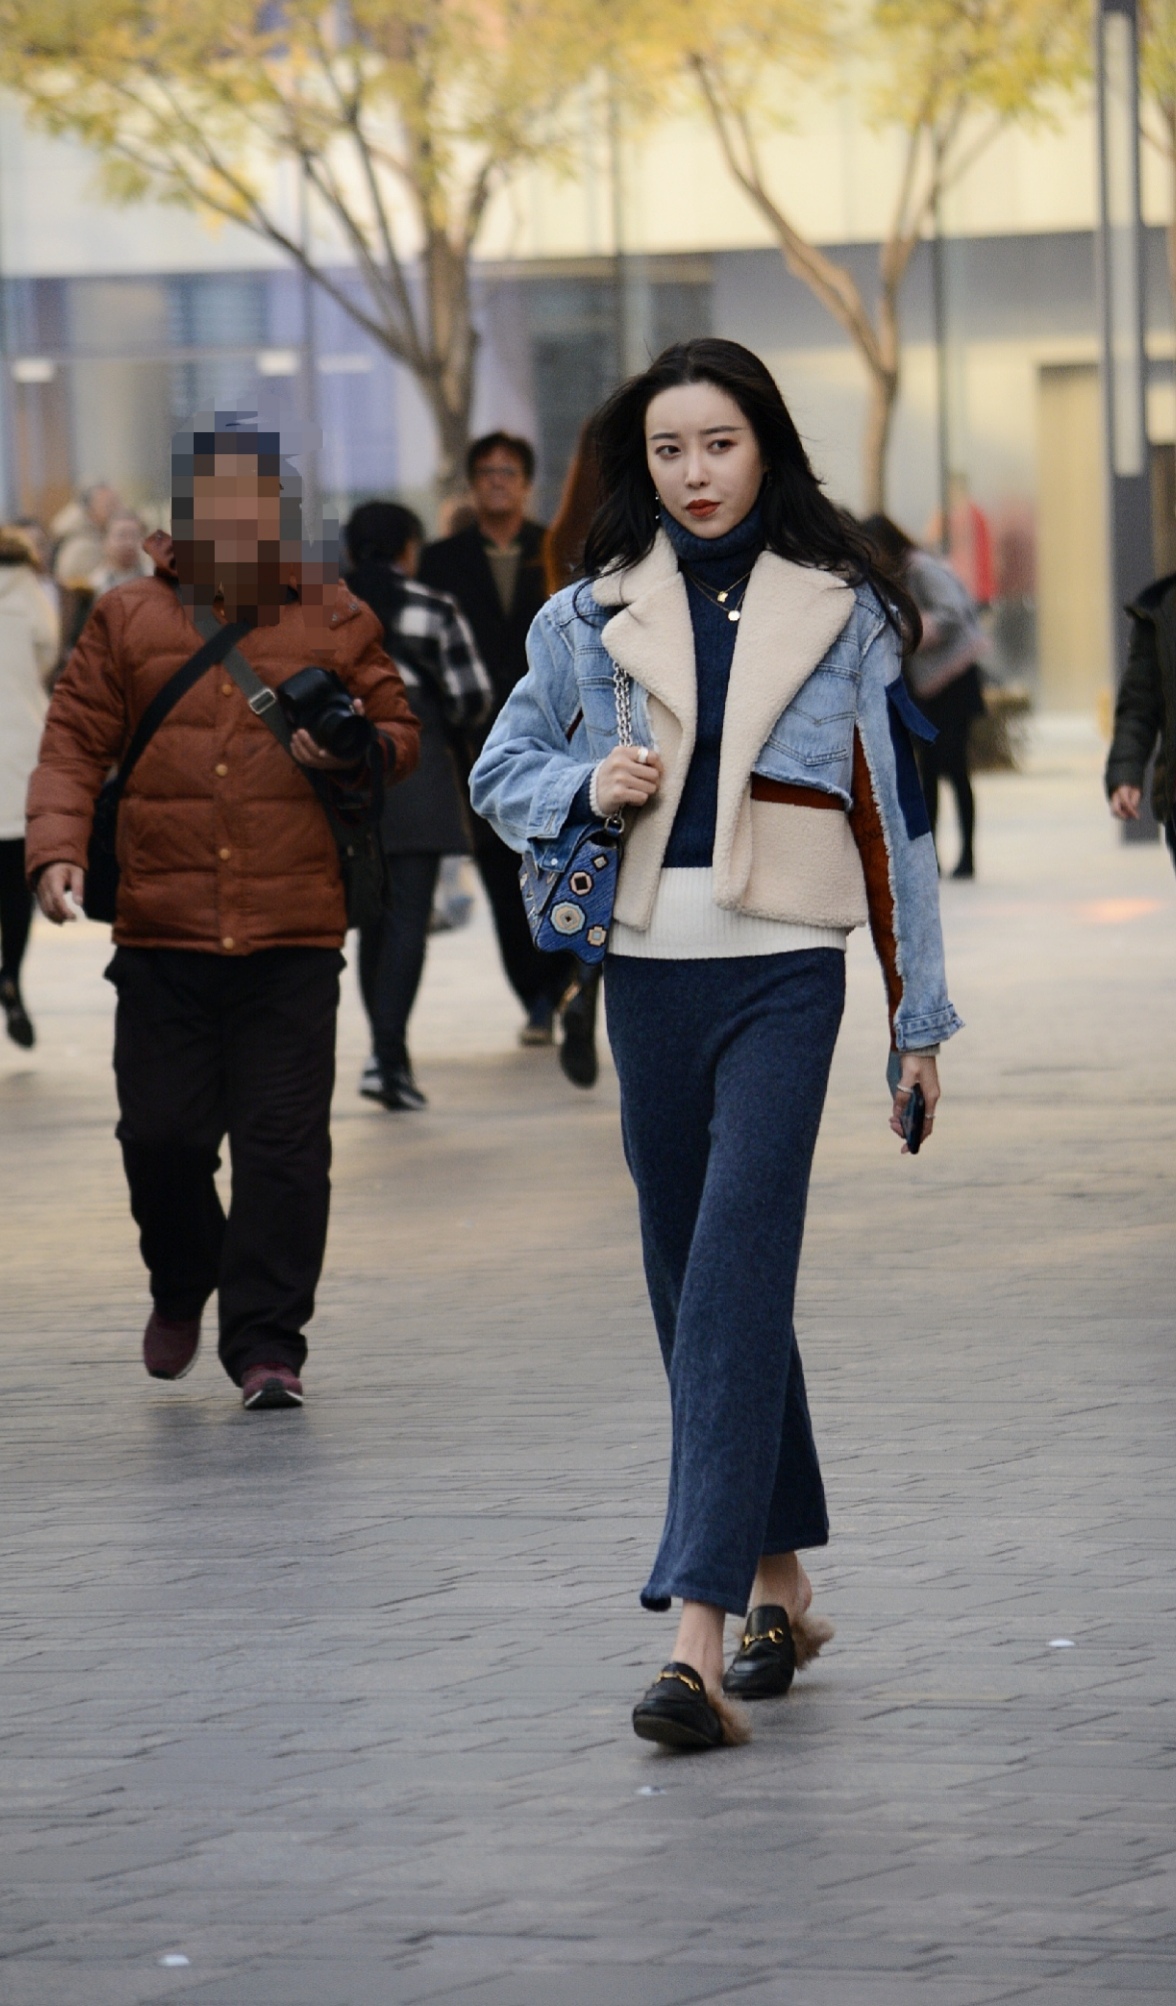 北京街拍:初冬时节,小姐姐这样穿衣搭配有种别样的视觉美感